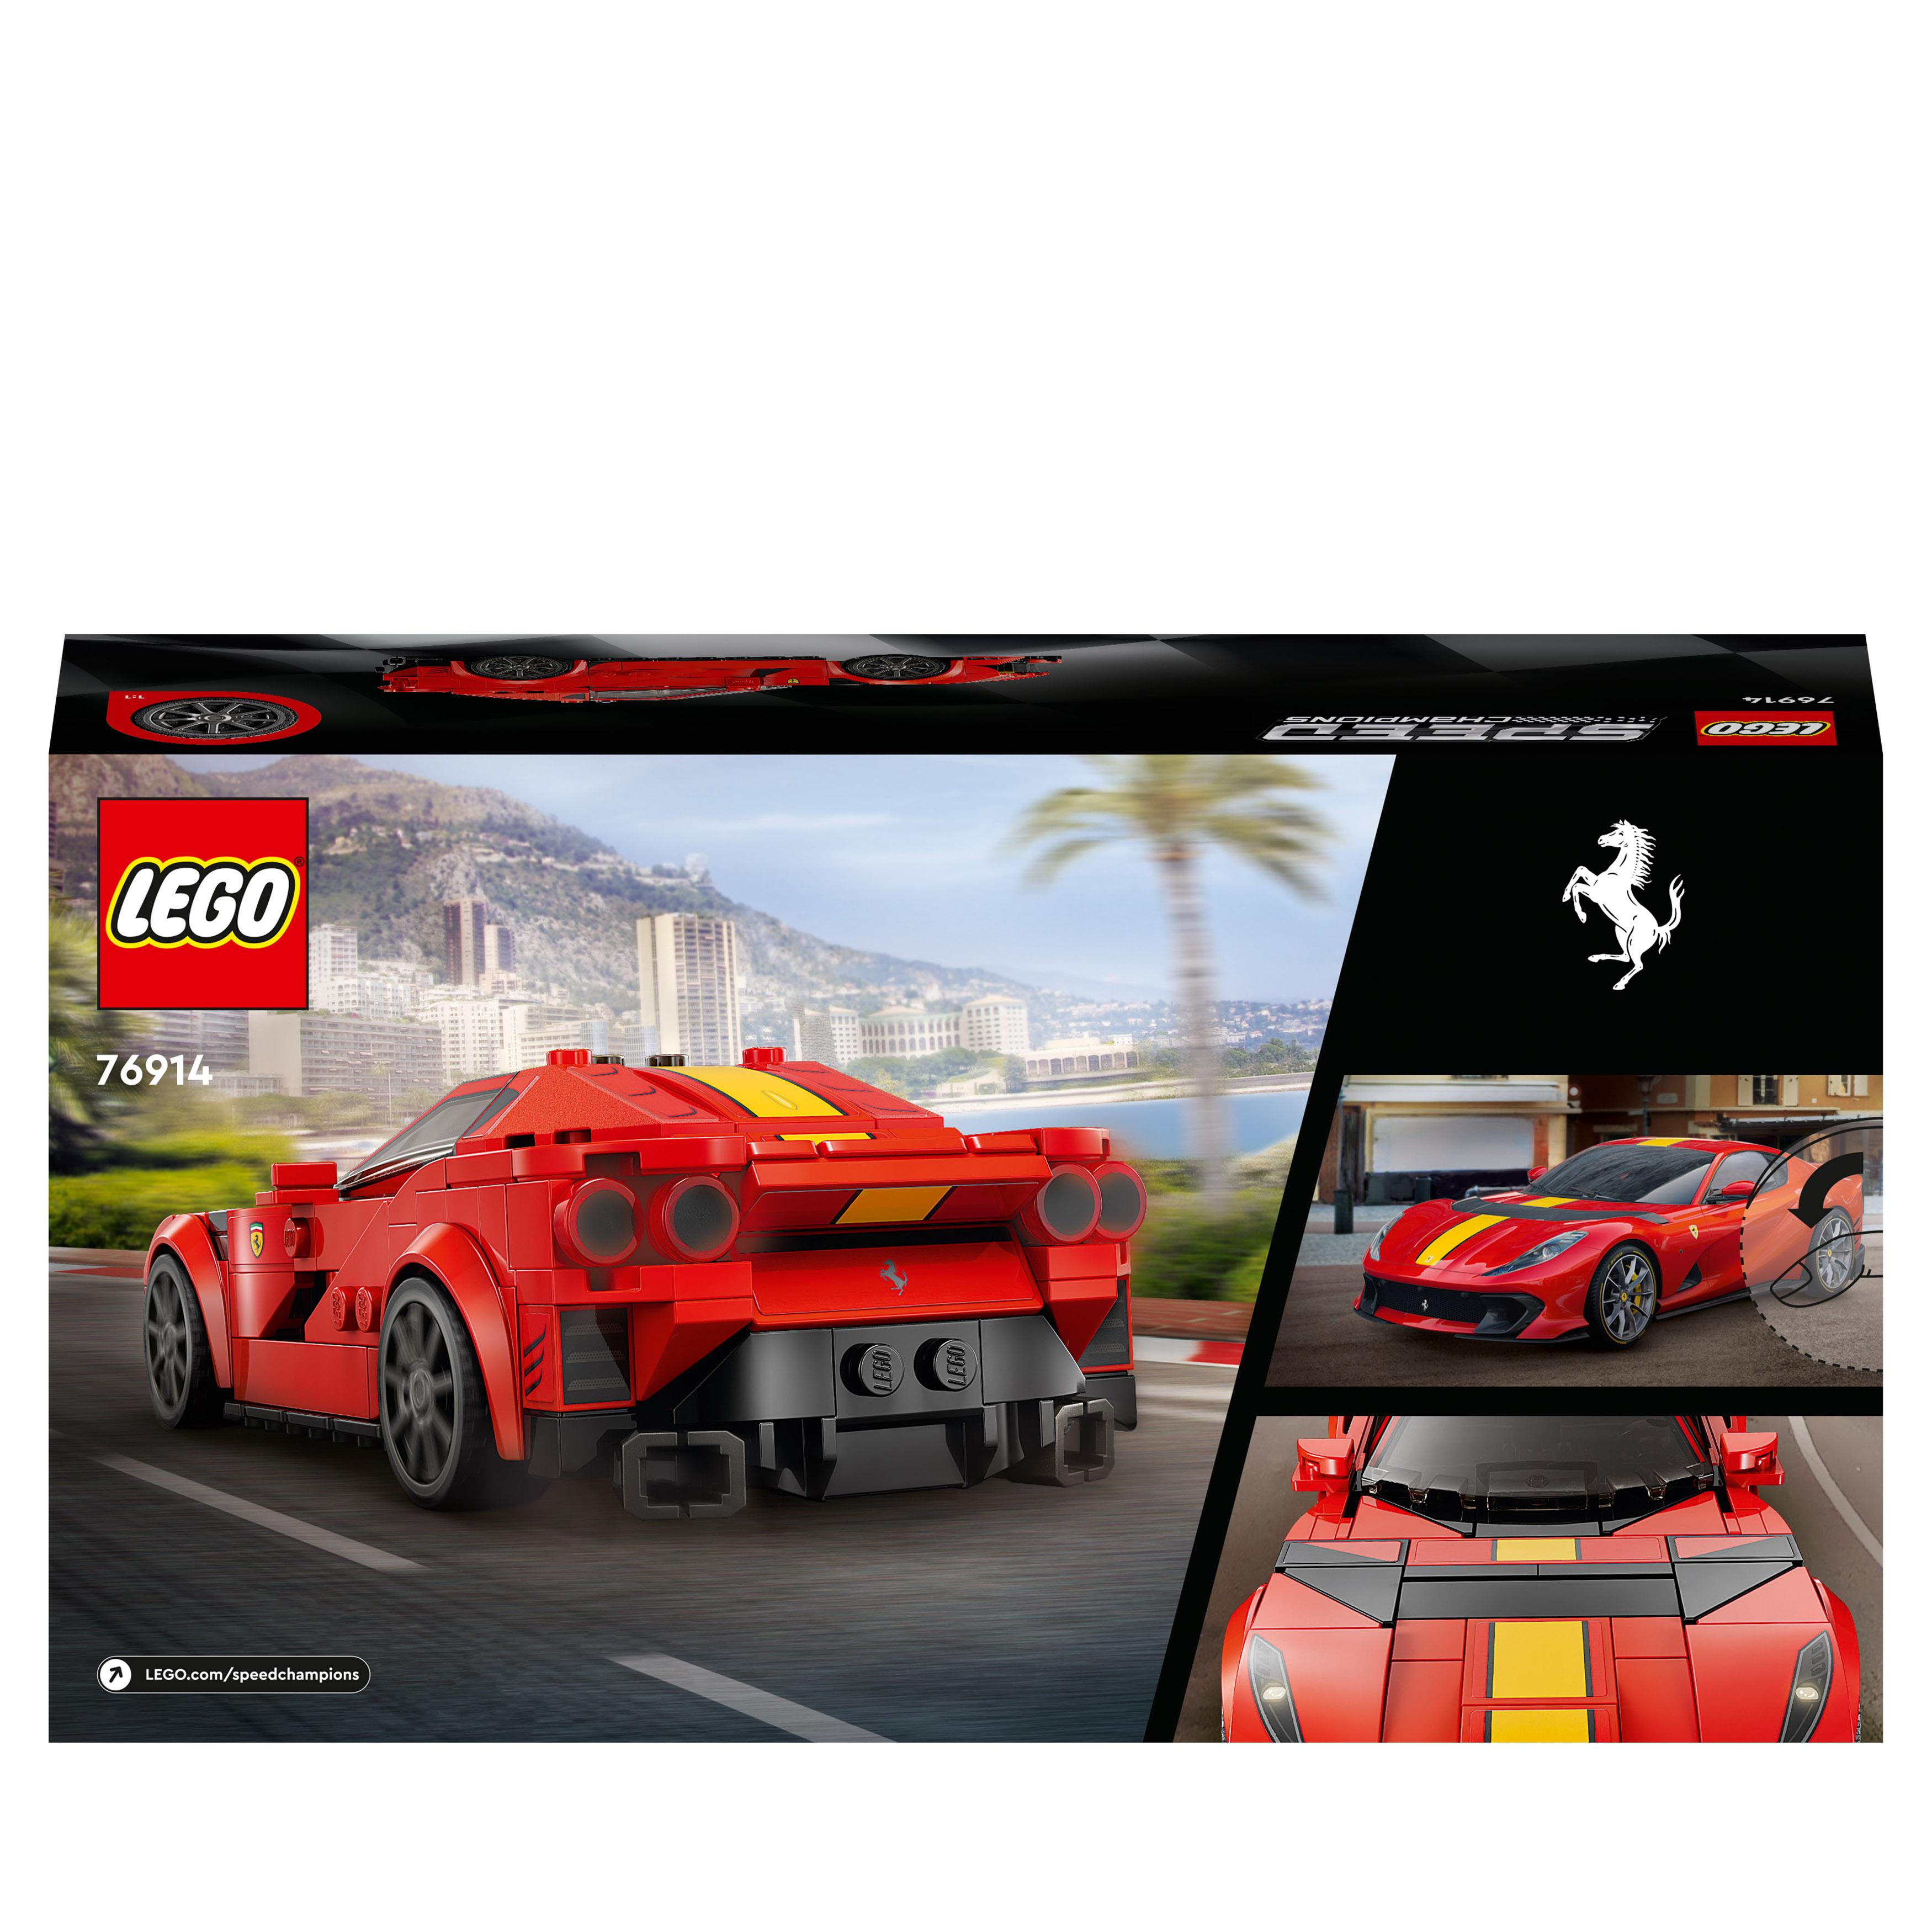 Competizione Mehrfarbig 76914 LEGO Ferrari Speed 812 Champions Bausatz,